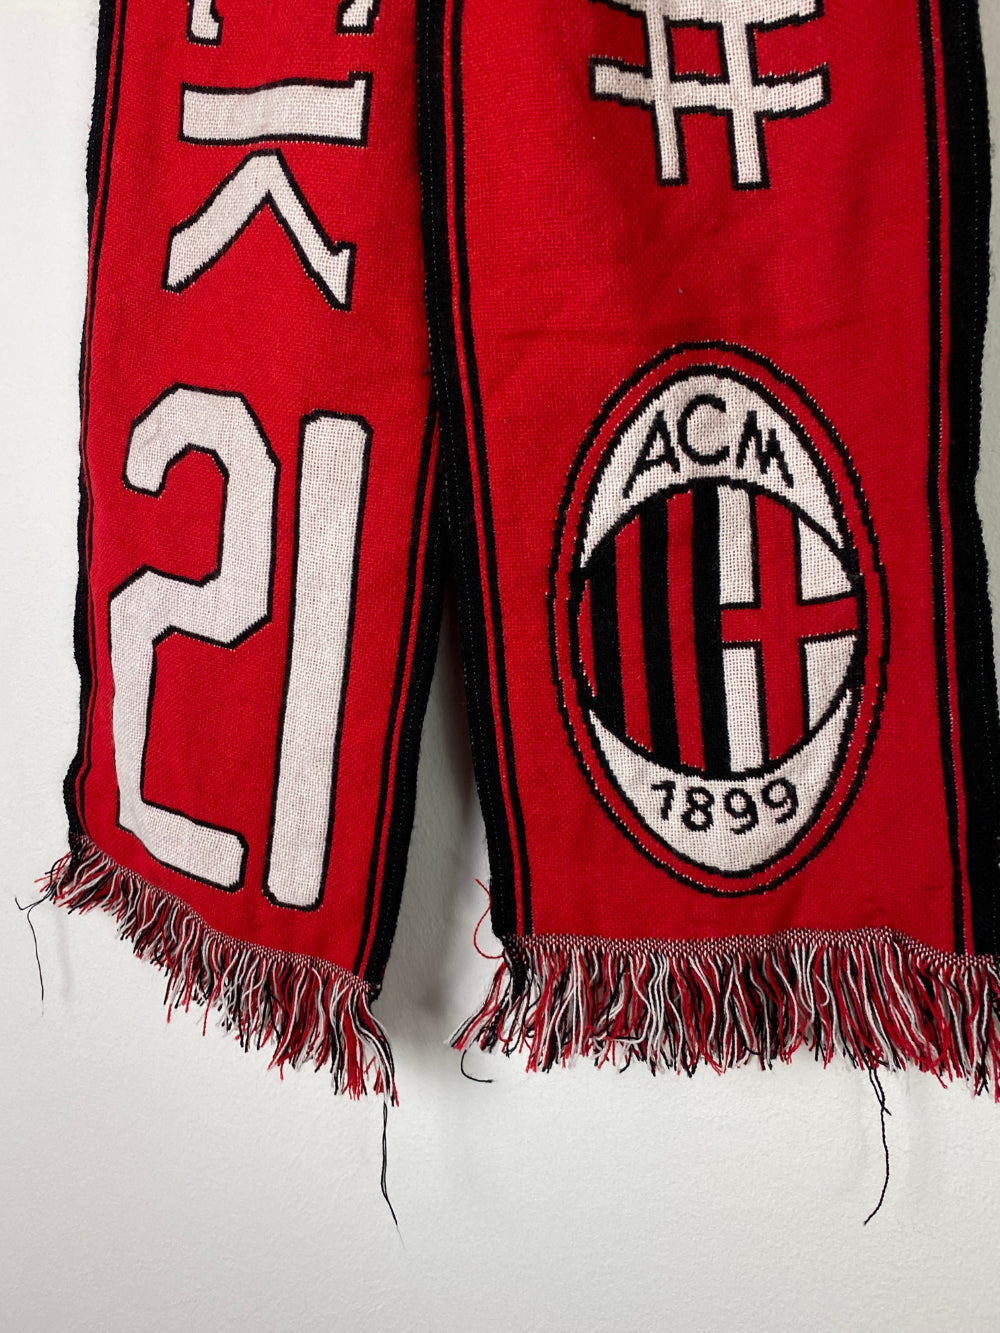 
                  
                    Original AC Milan Scarf of Zlatan Ibrahimovic #21
                  
                